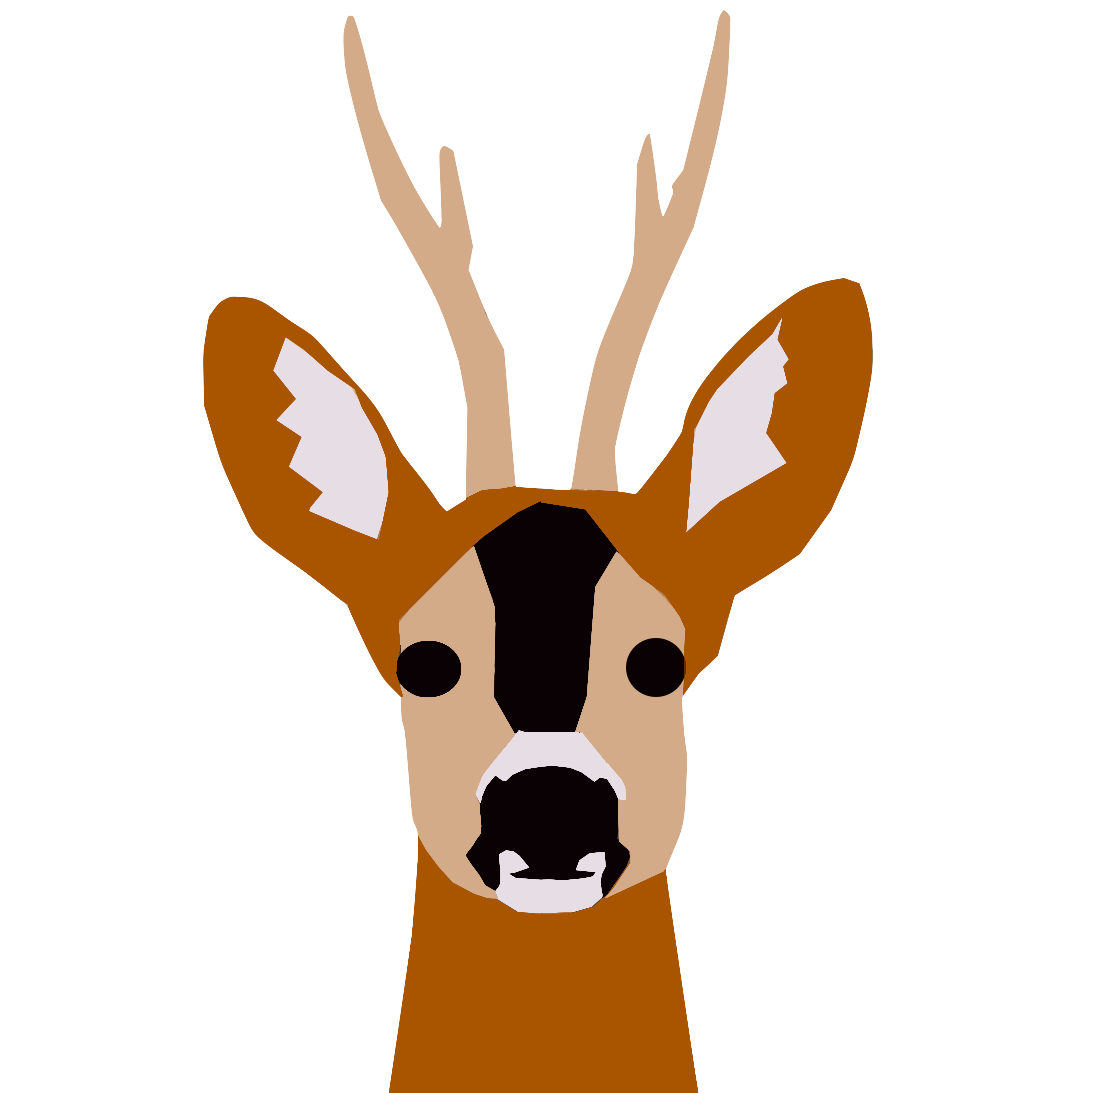 Capreolus or roe deer